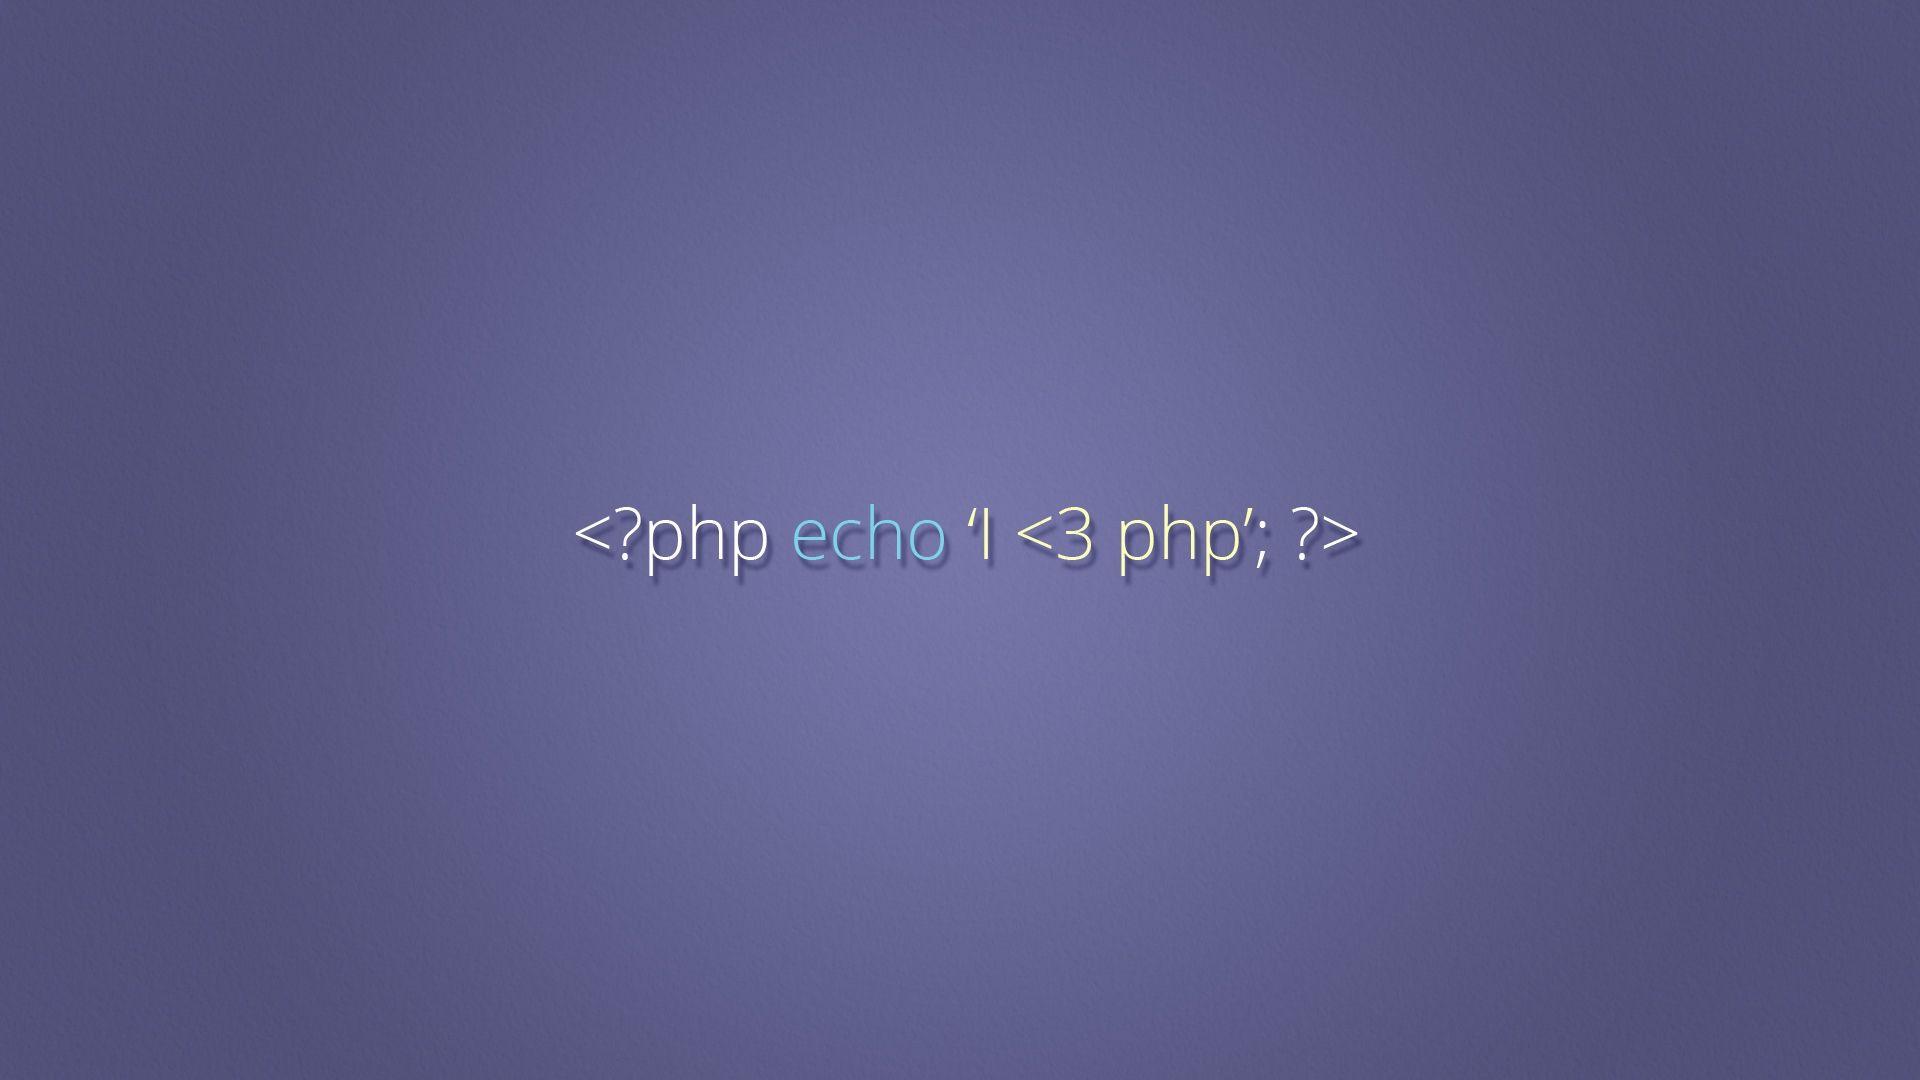 I Love PHP Developer Wallpaper